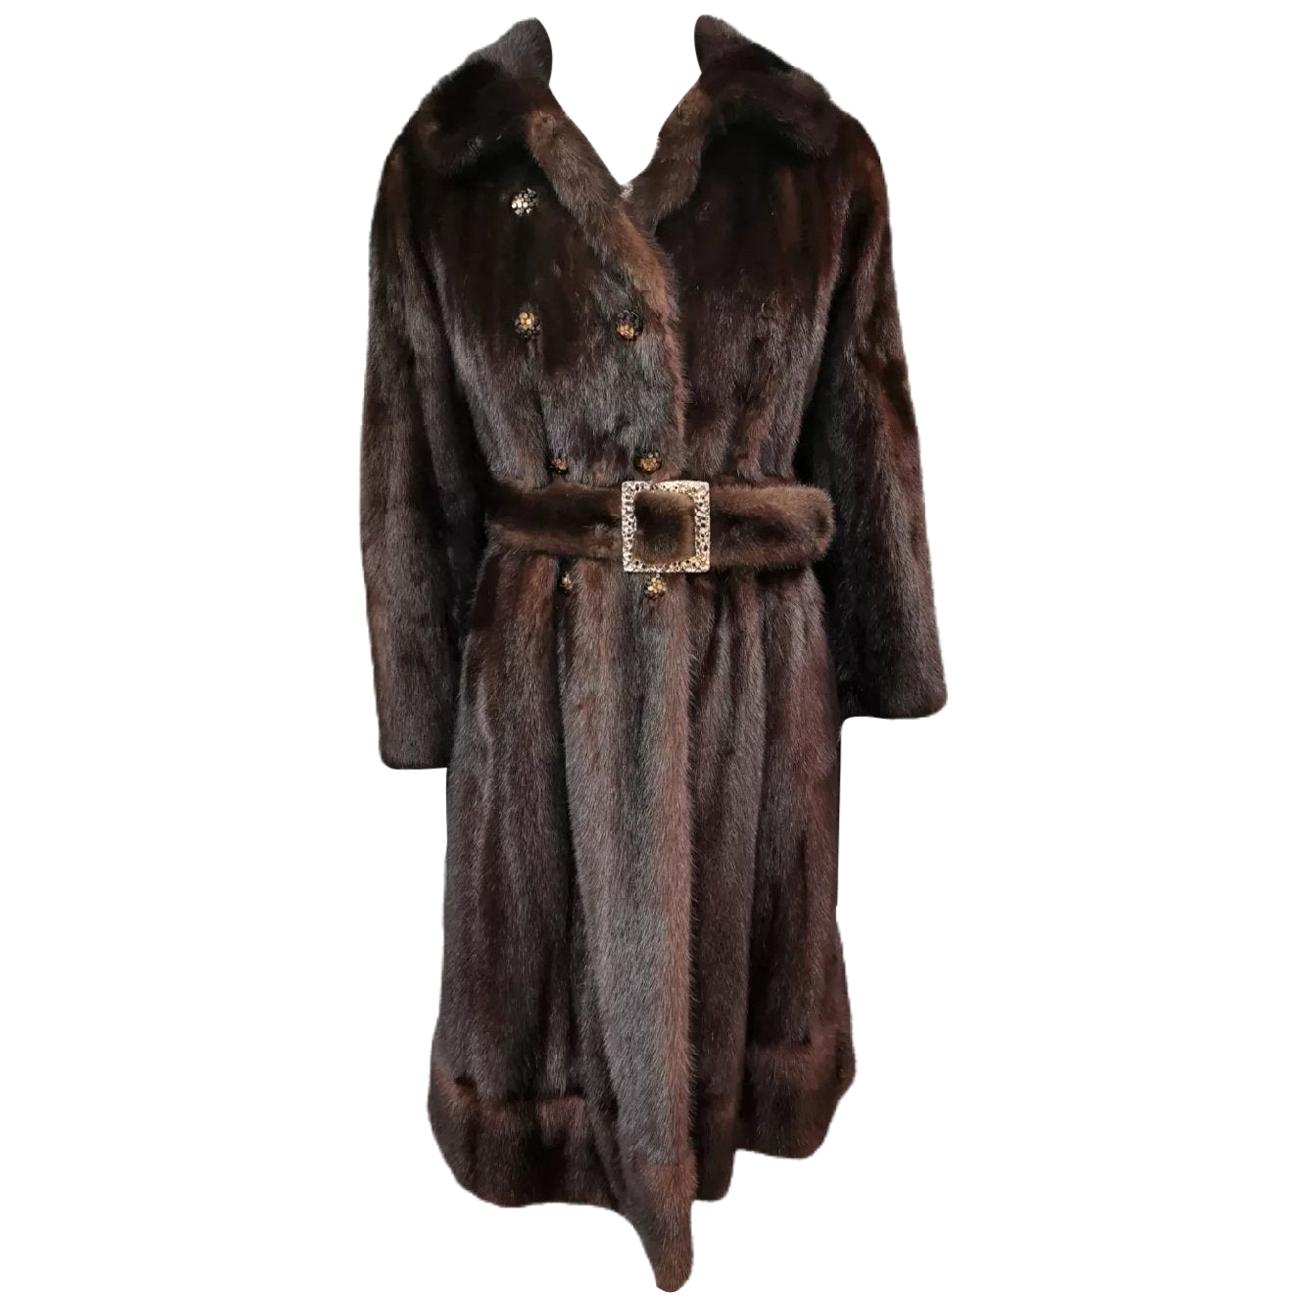 Christian dior / Holt renfrew mink fur coat size 6